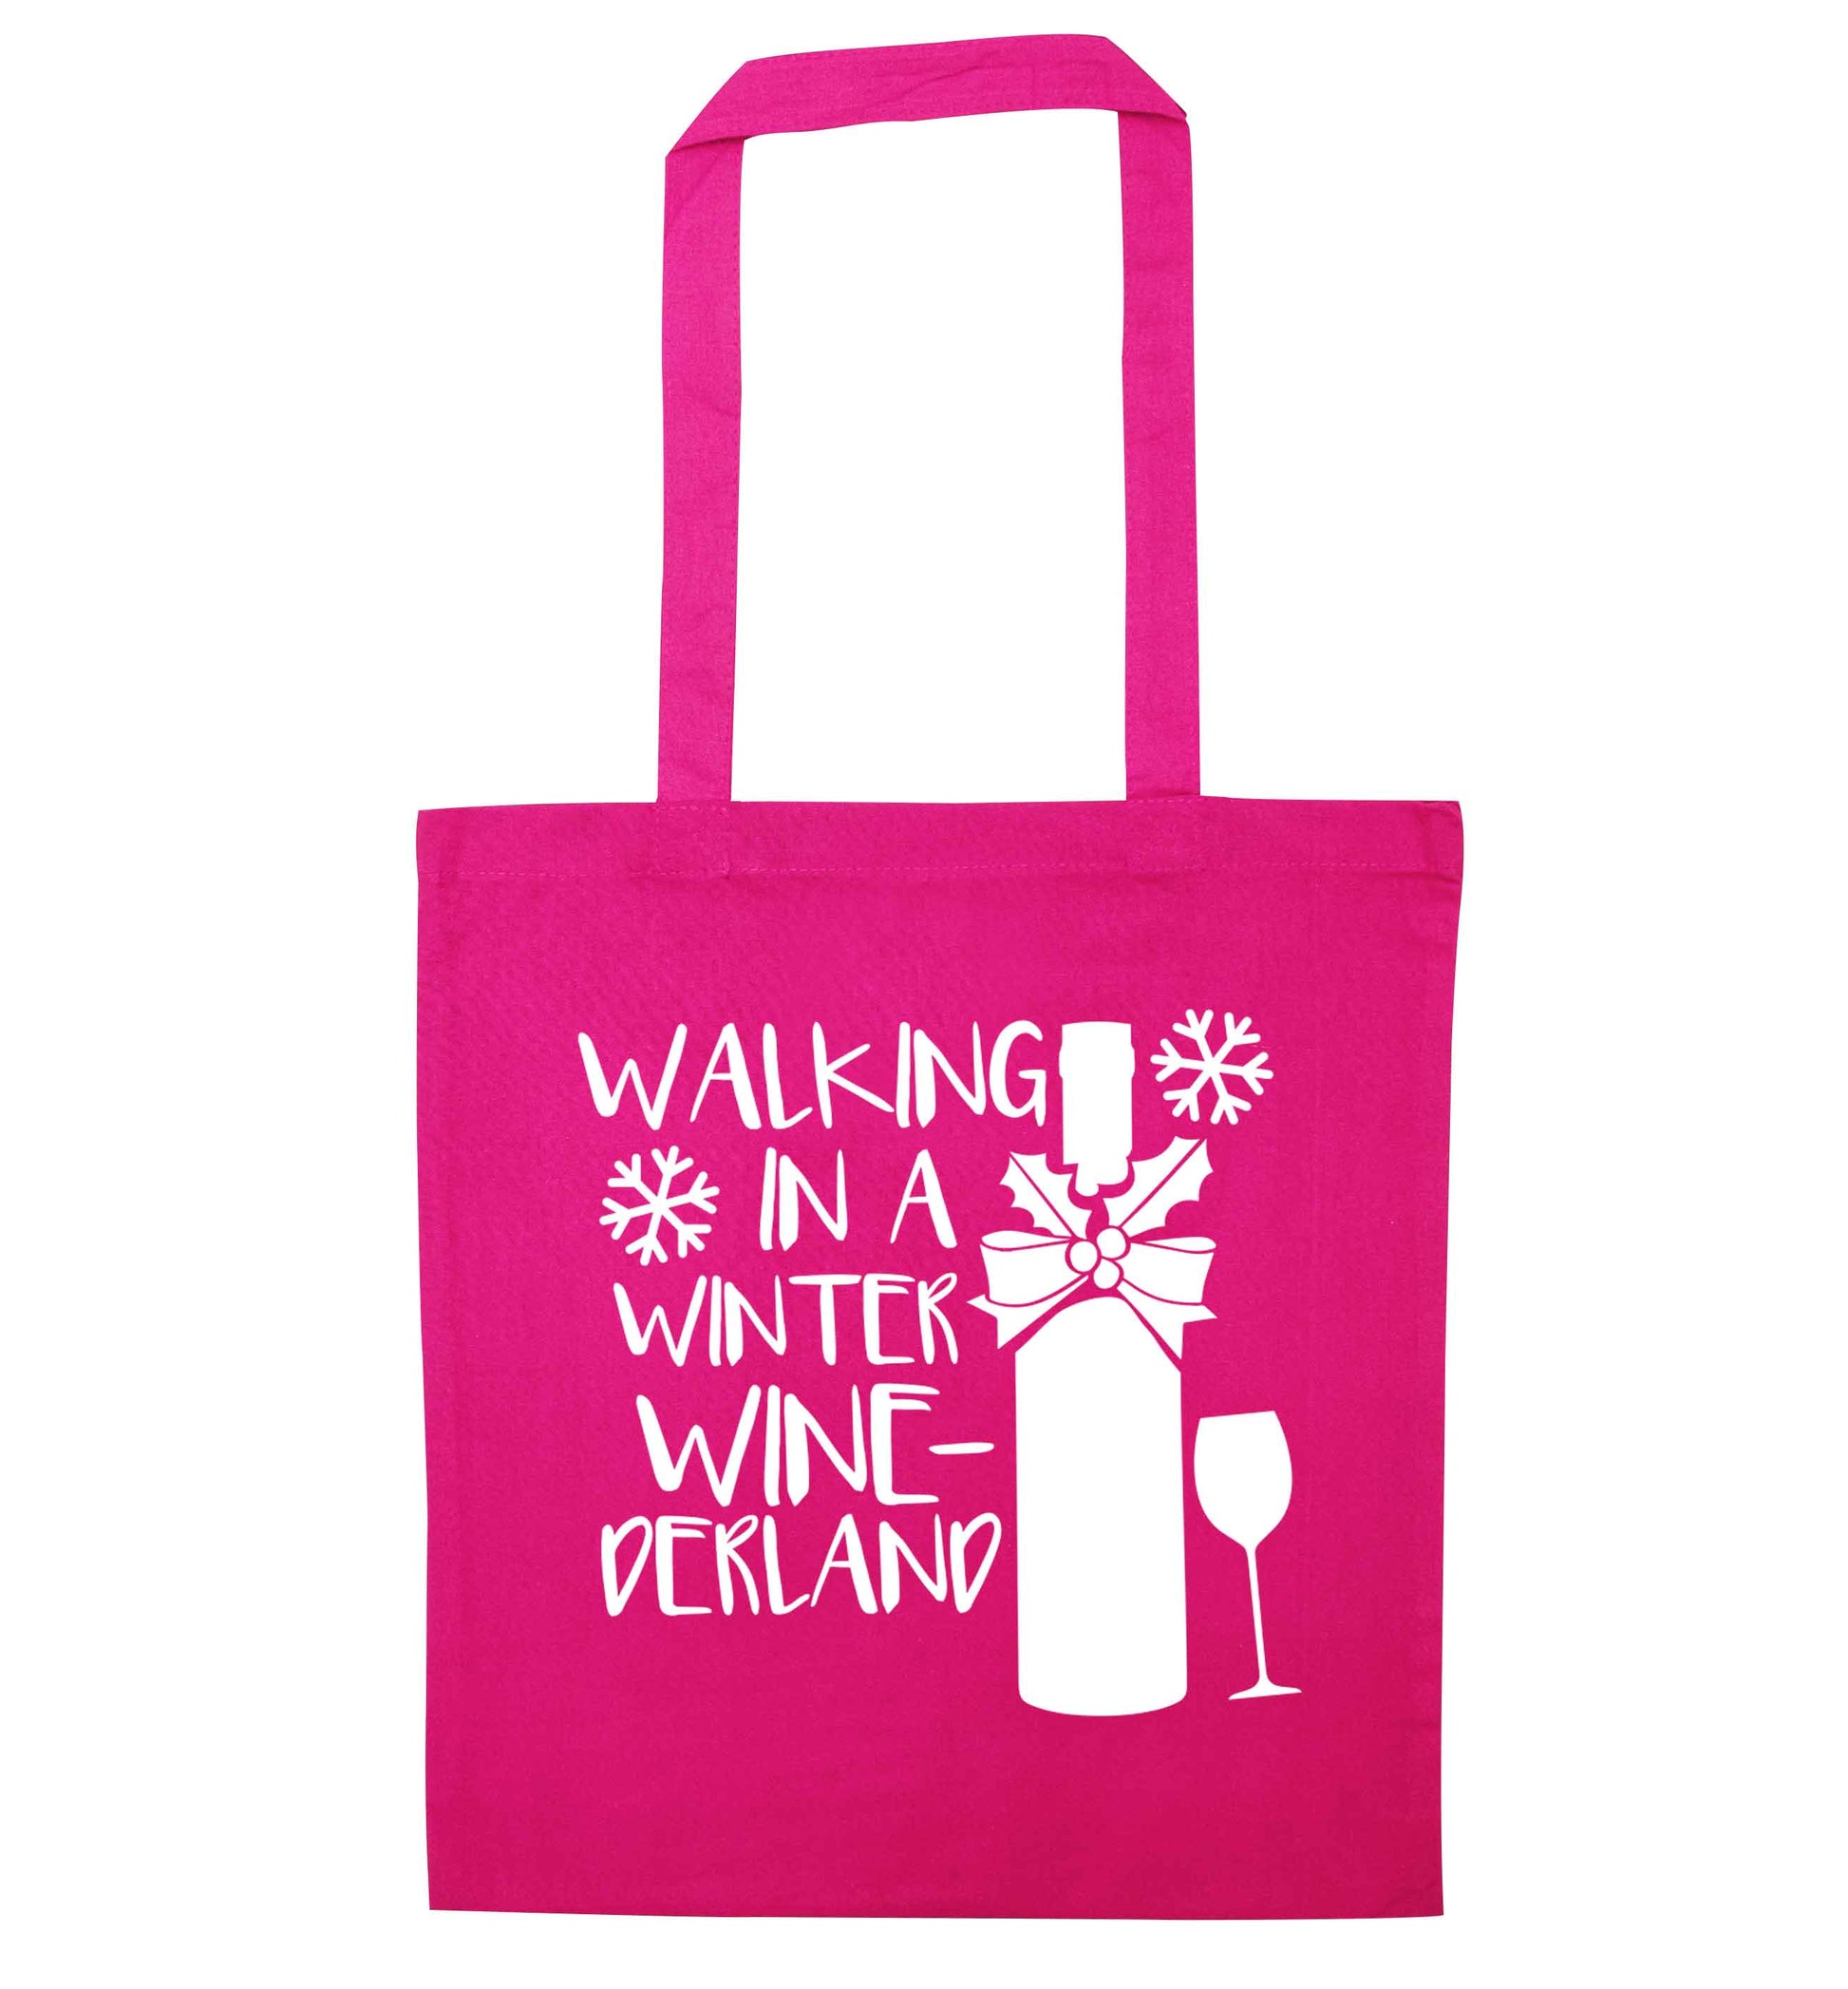 Walking in a wine-derwonderland pink tote bag